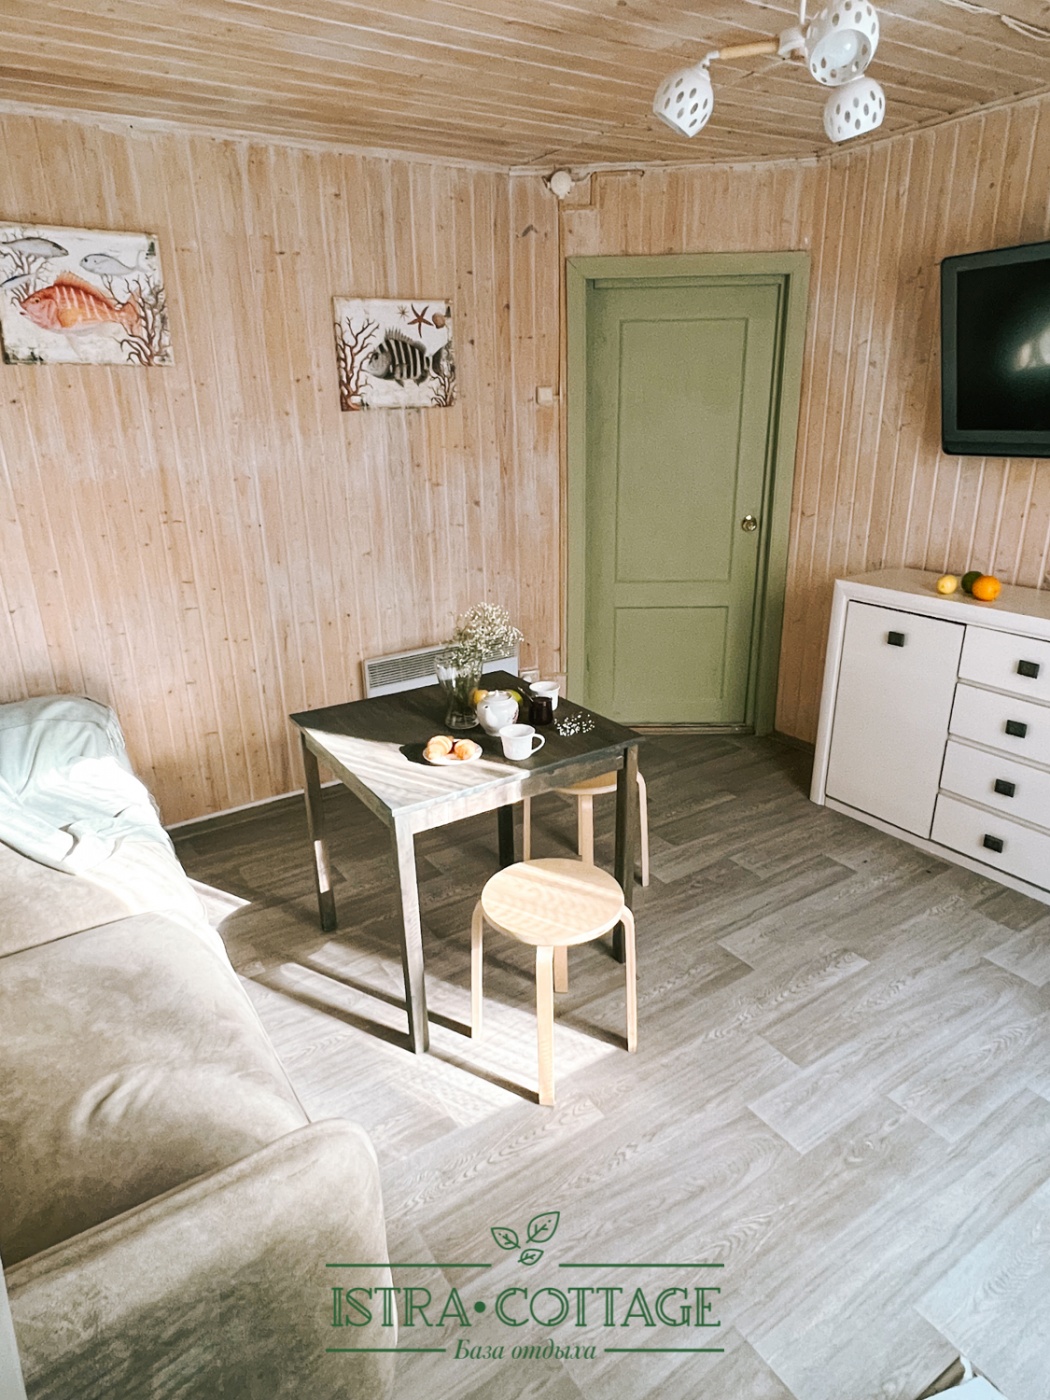 База отдыха «ISTRACOTTAGE» Московская область Коттедж 3-комнатный, фото 6